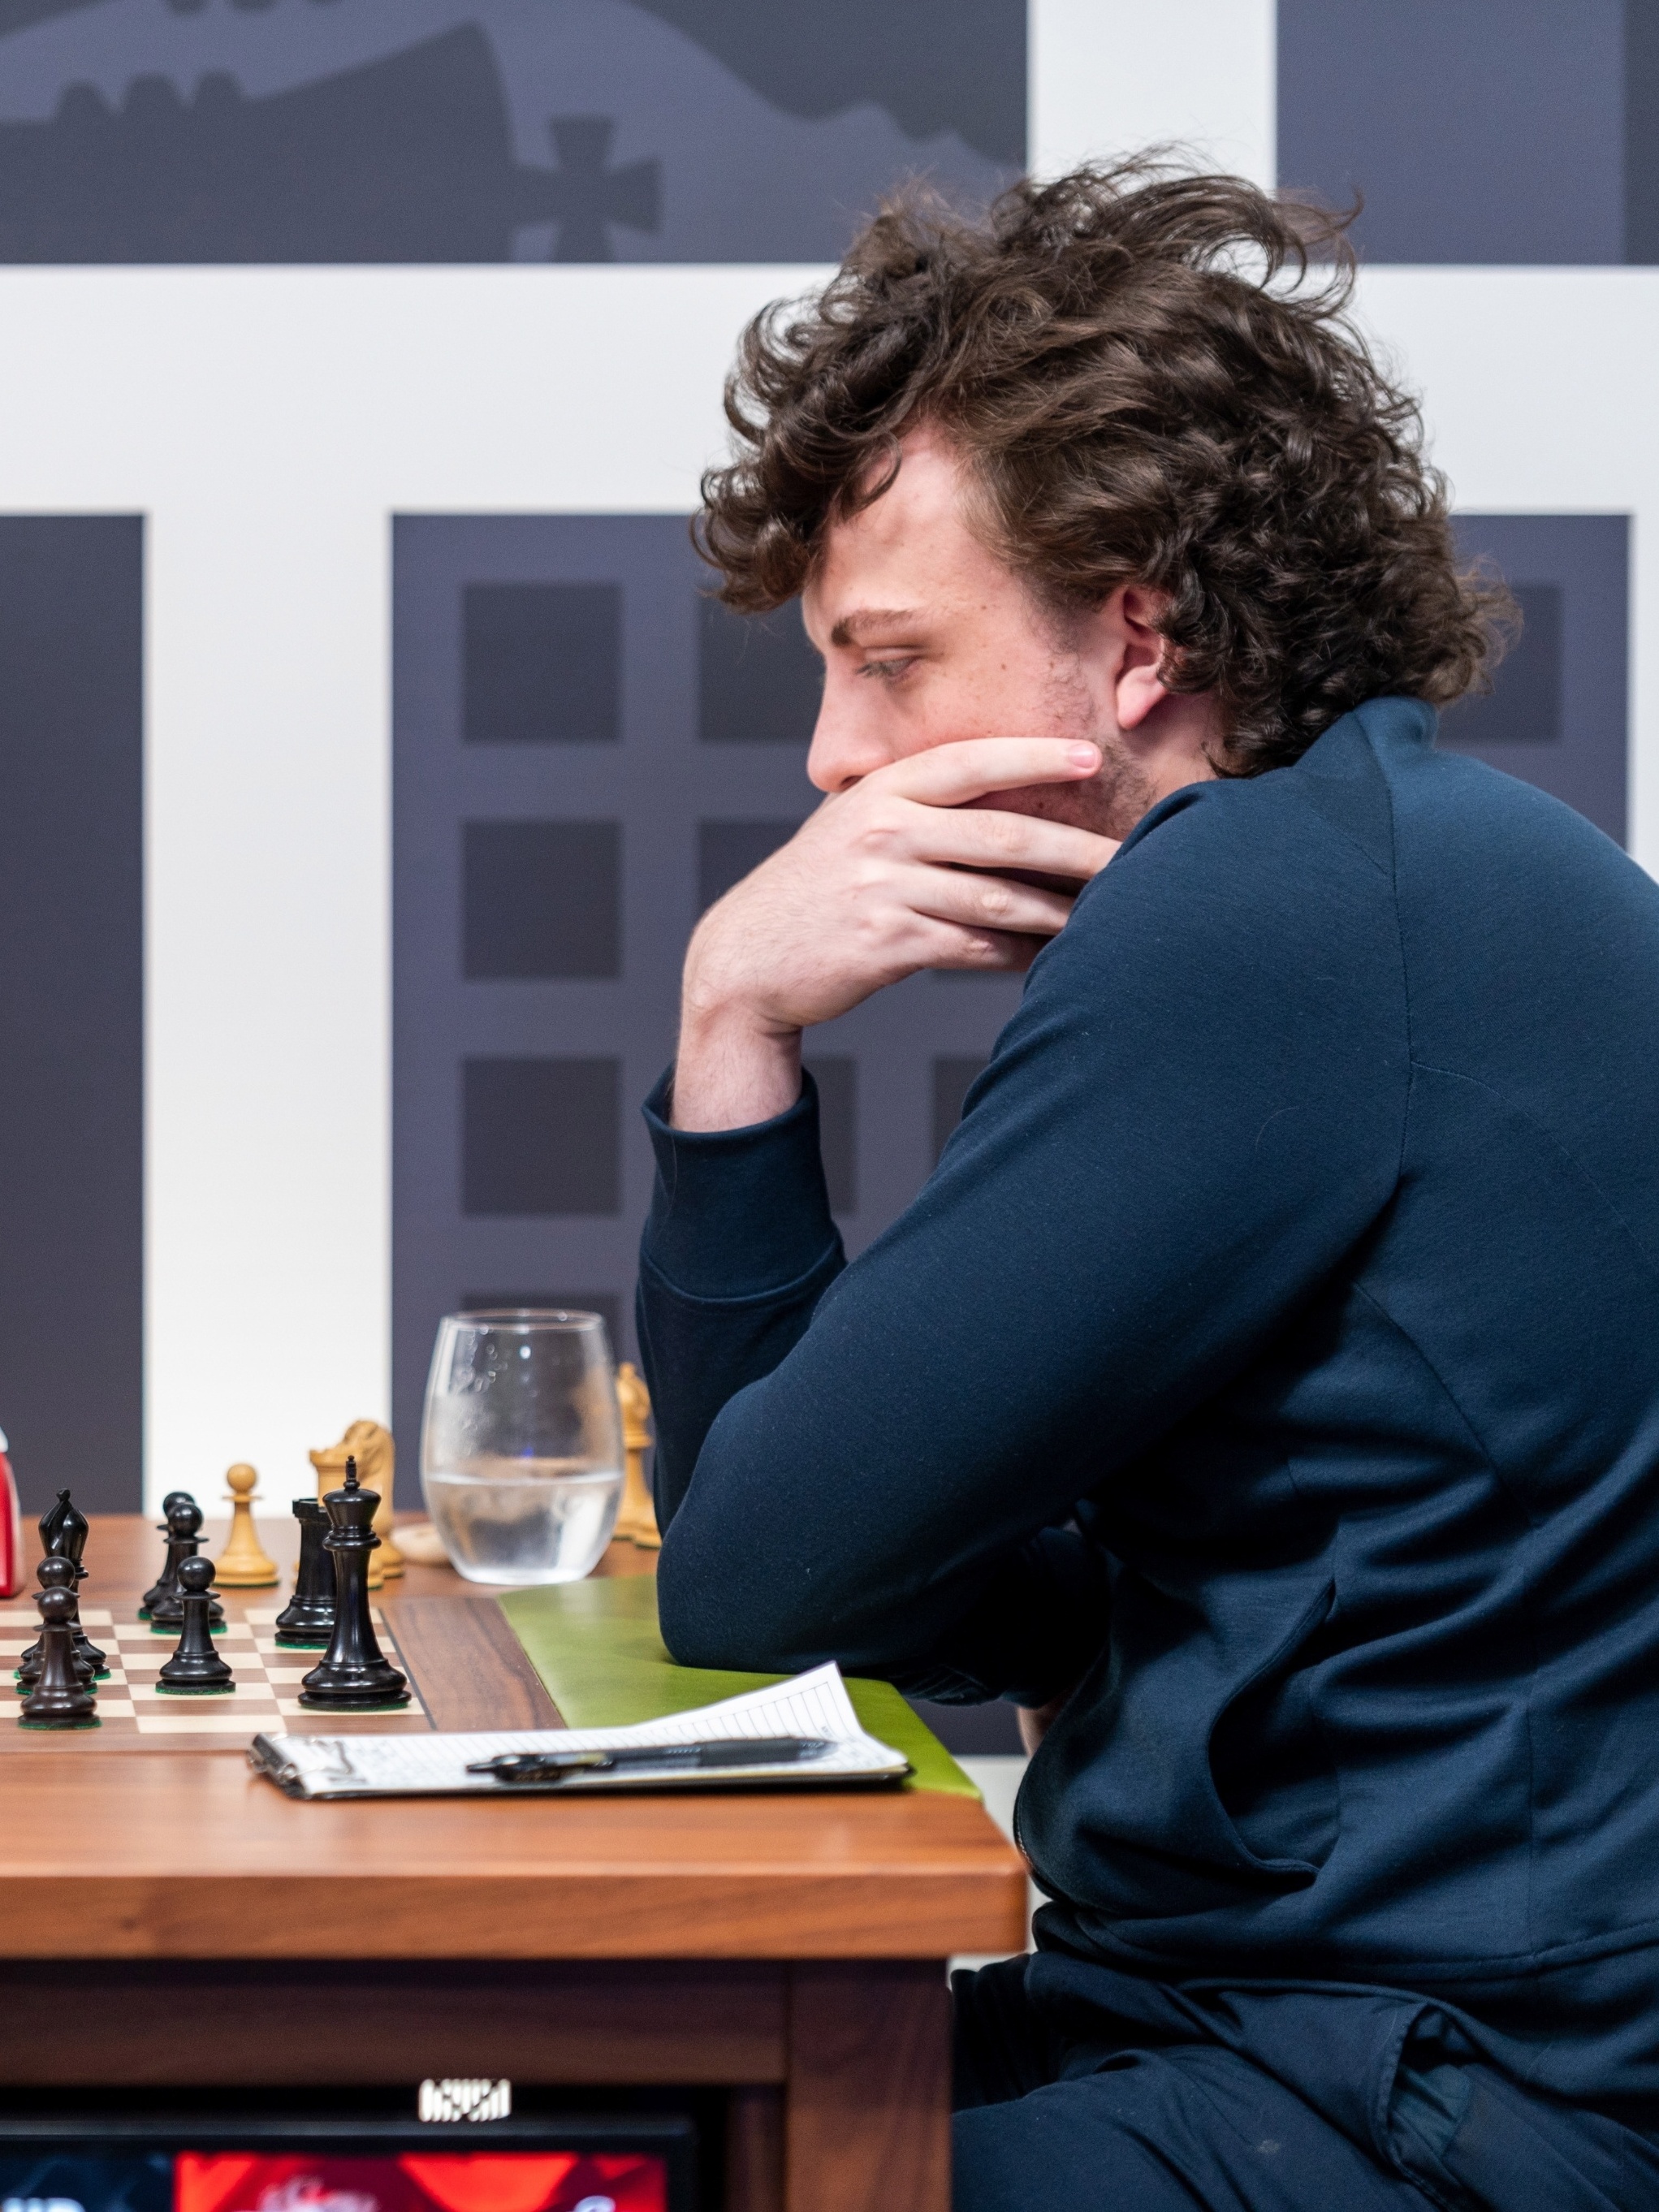 Minha primeira Partida com Magnus Carlsen - Raffael Chess Vs